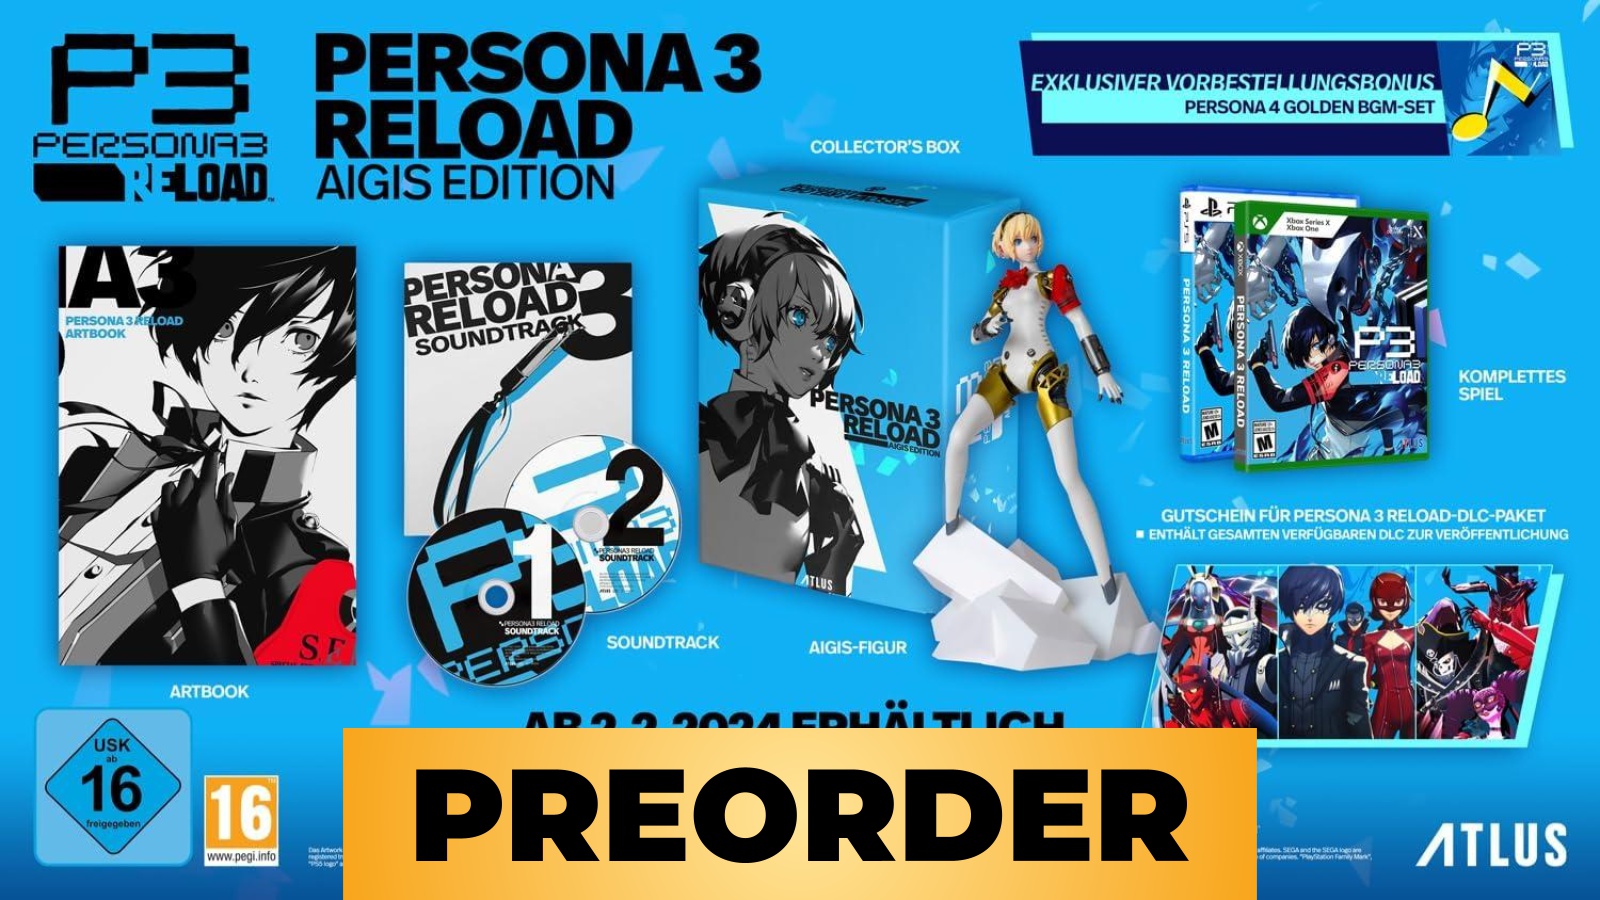 Persona 3 Reload Aigis Edition: preorder Amazon per PS5 e Xbox Series X disponibile